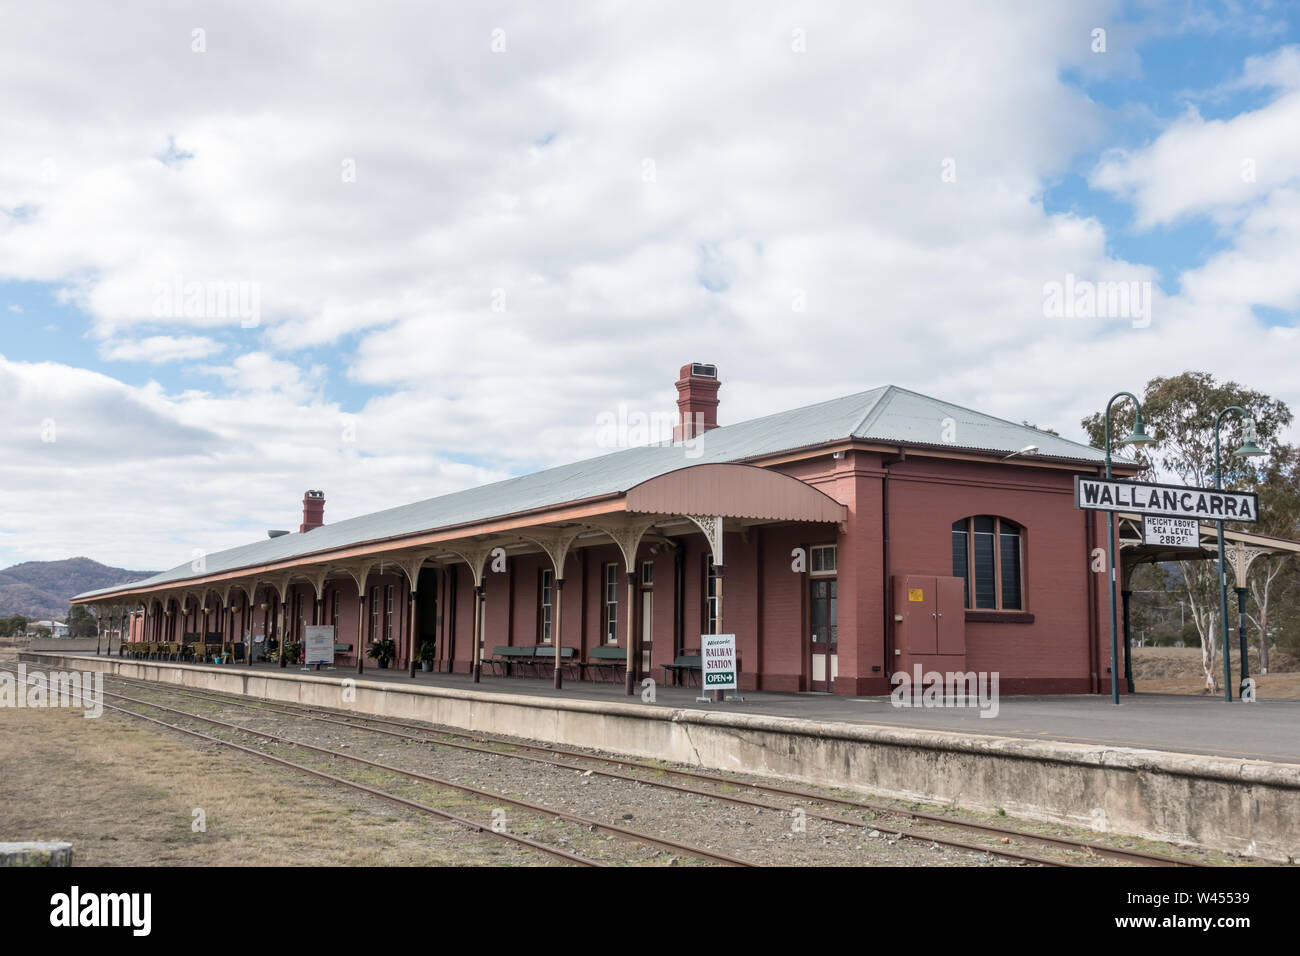 Histórico Wallangarra en desuso de la Estación de Ferrocarril de Queensland/frontera de NSW. Foto de stock